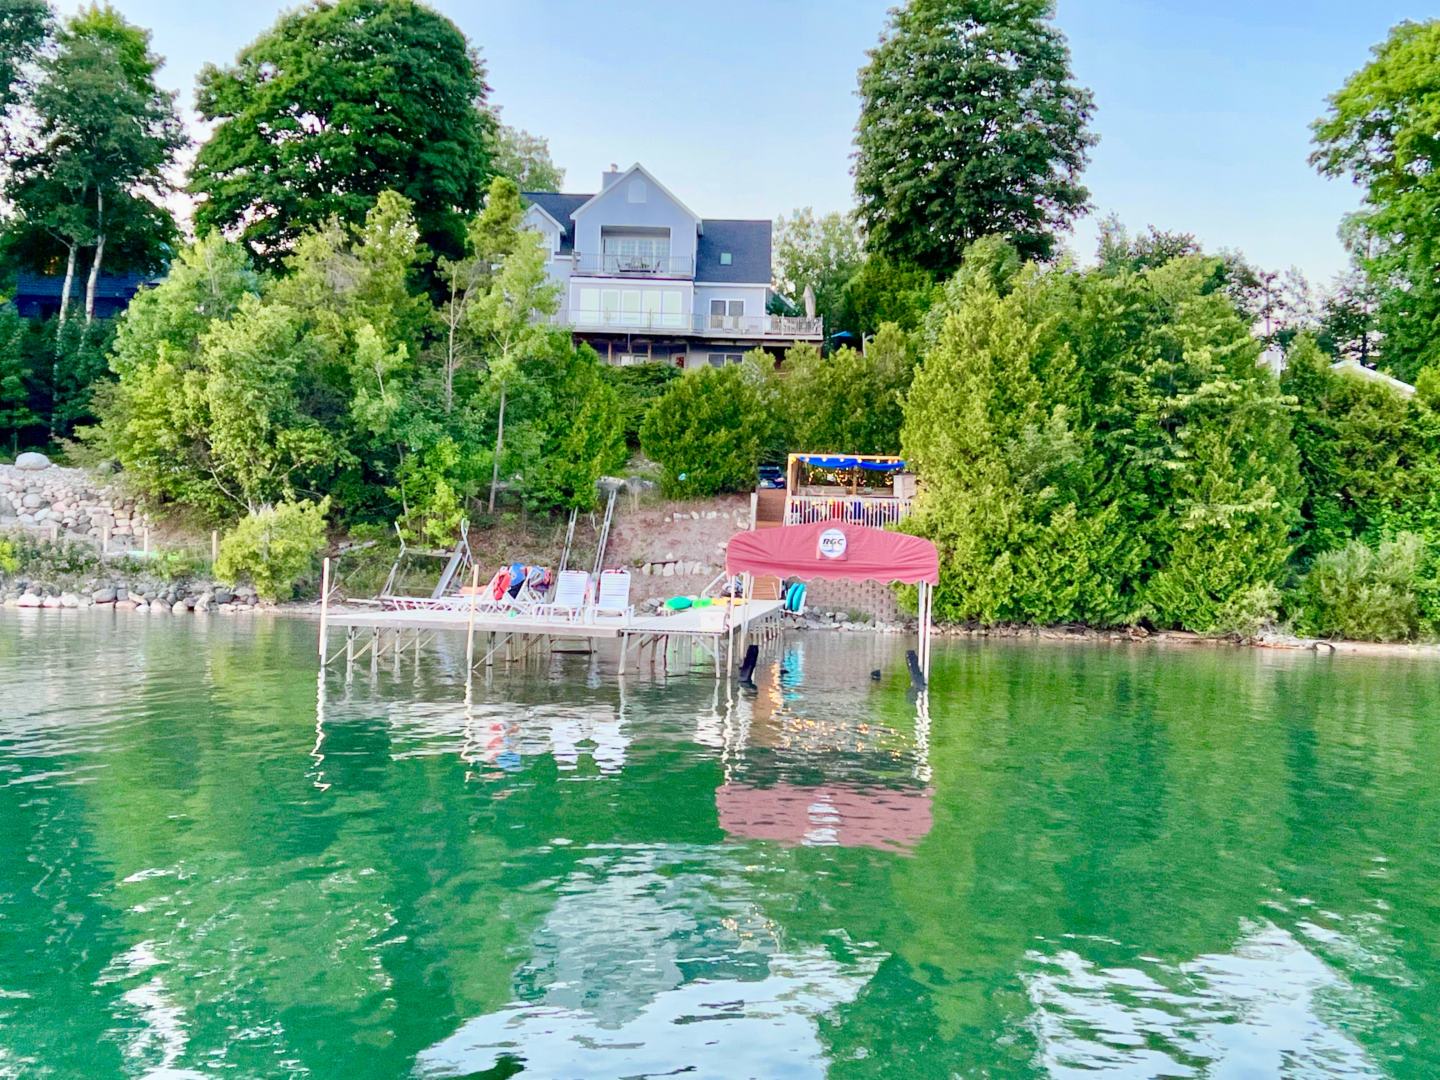 Lakeside Inn with a dock